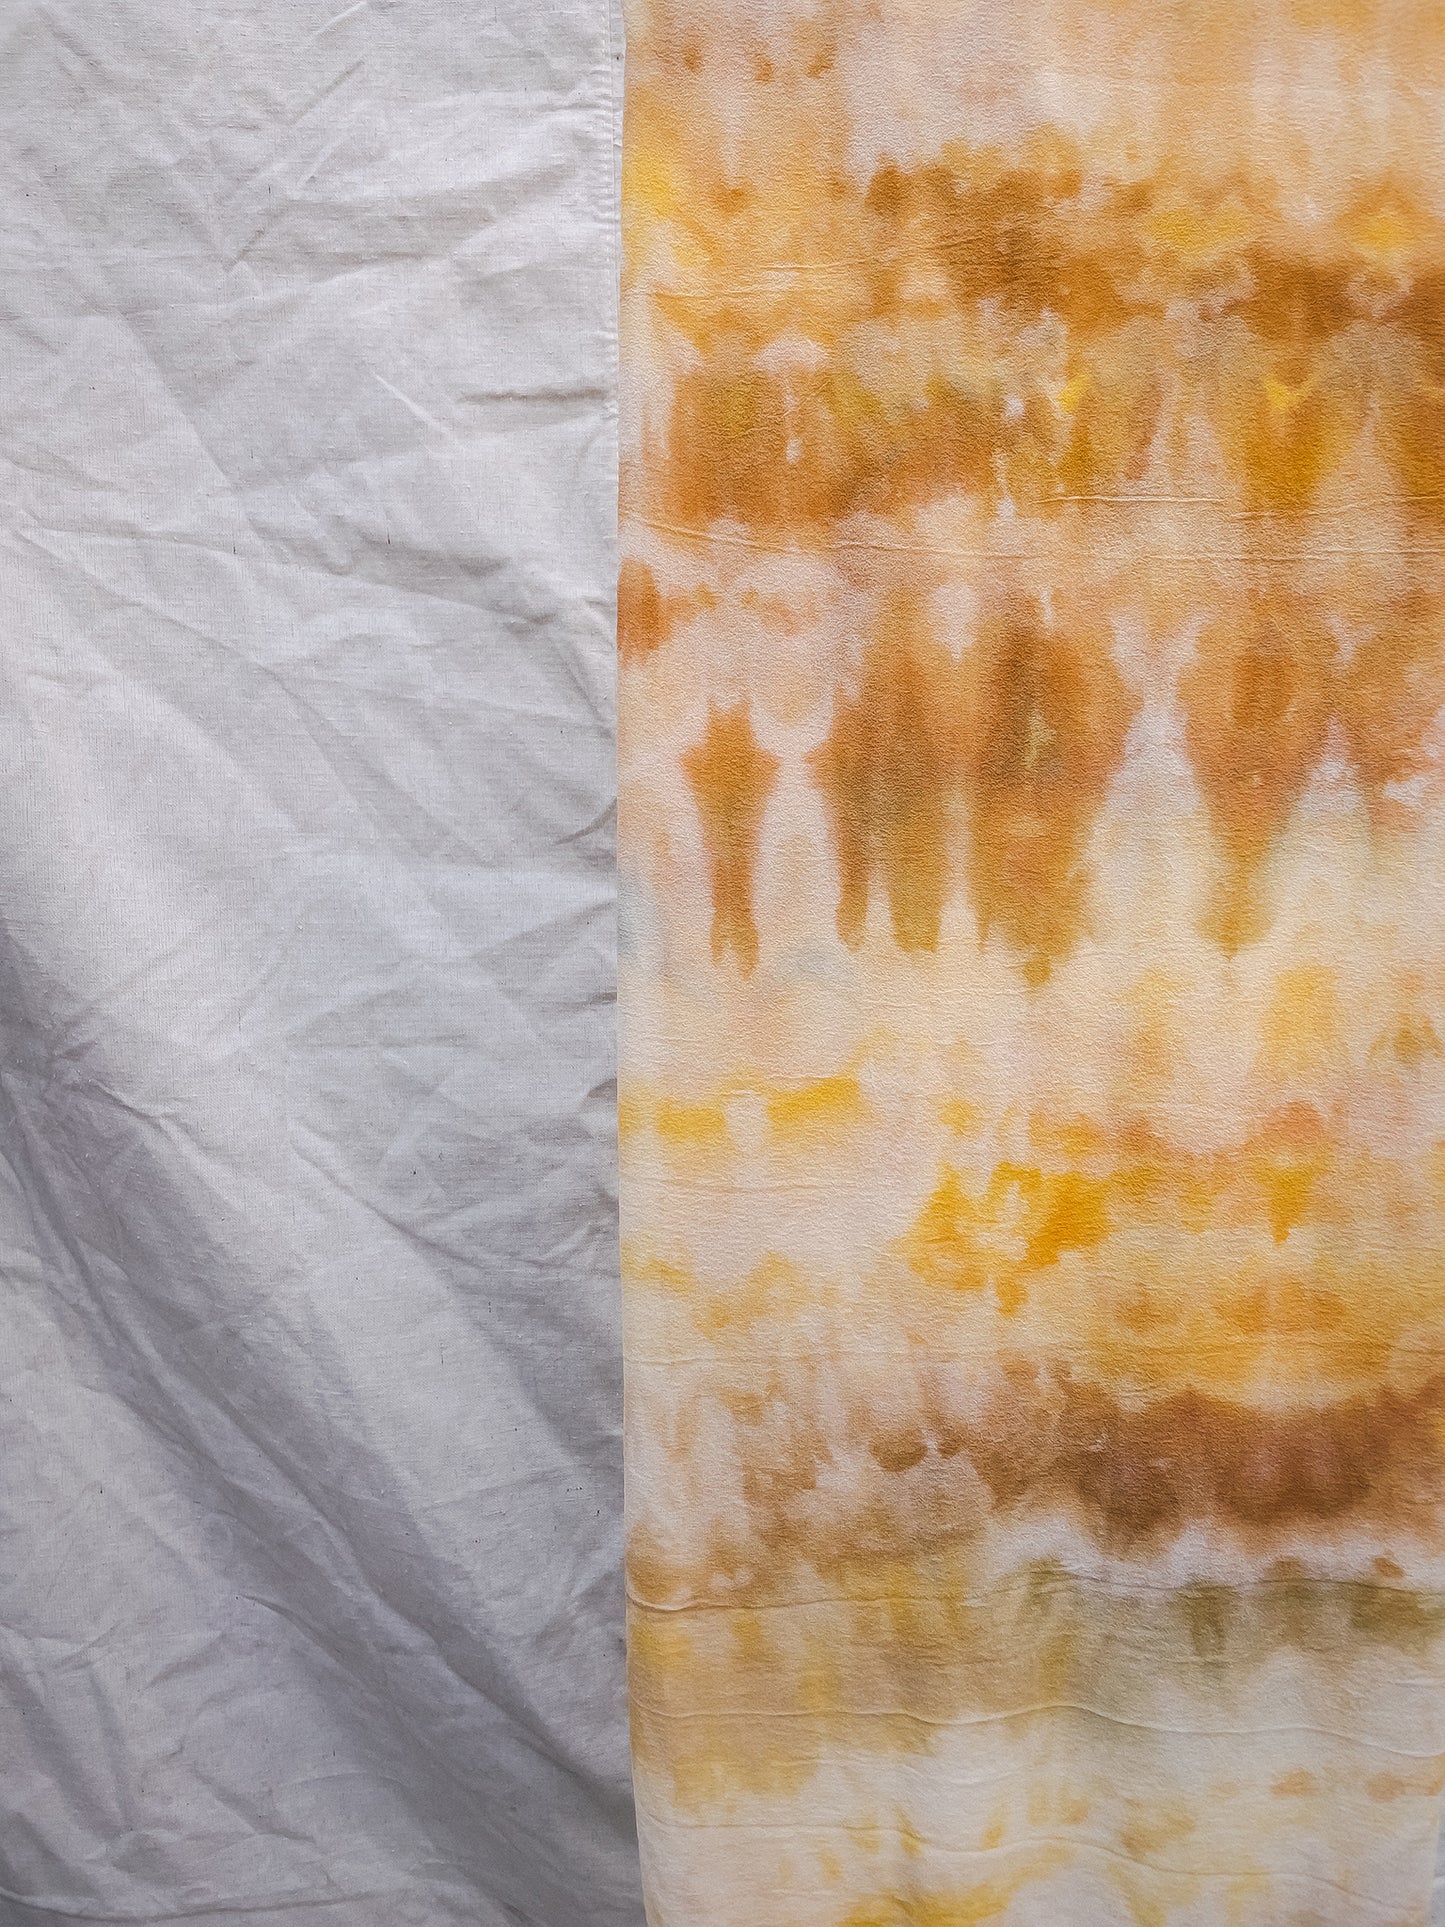 Sarong - hand dyed 100% silk charmeuse